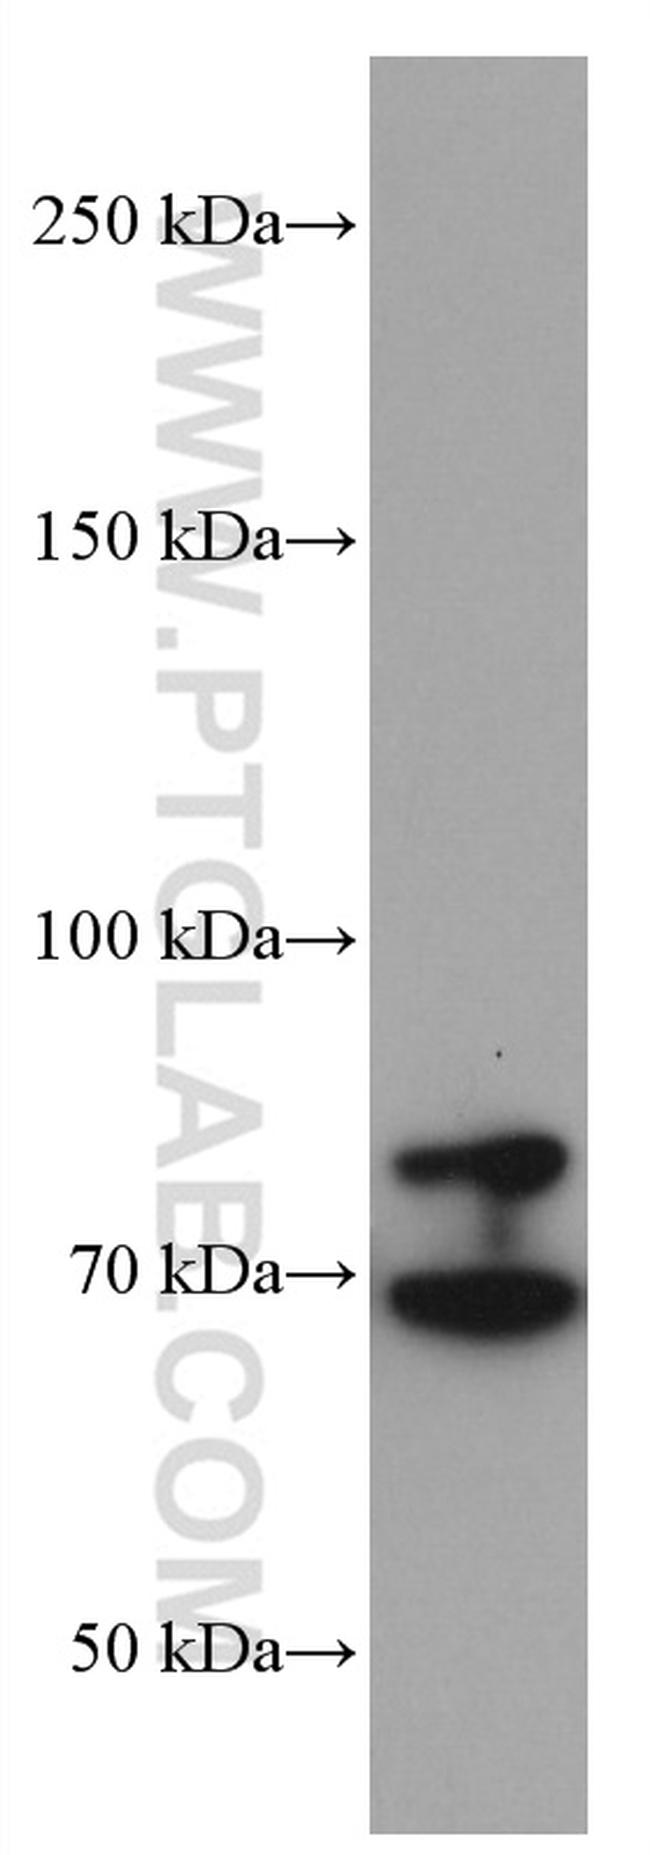 TGFBR2 Antibody in Western Blot (WB)